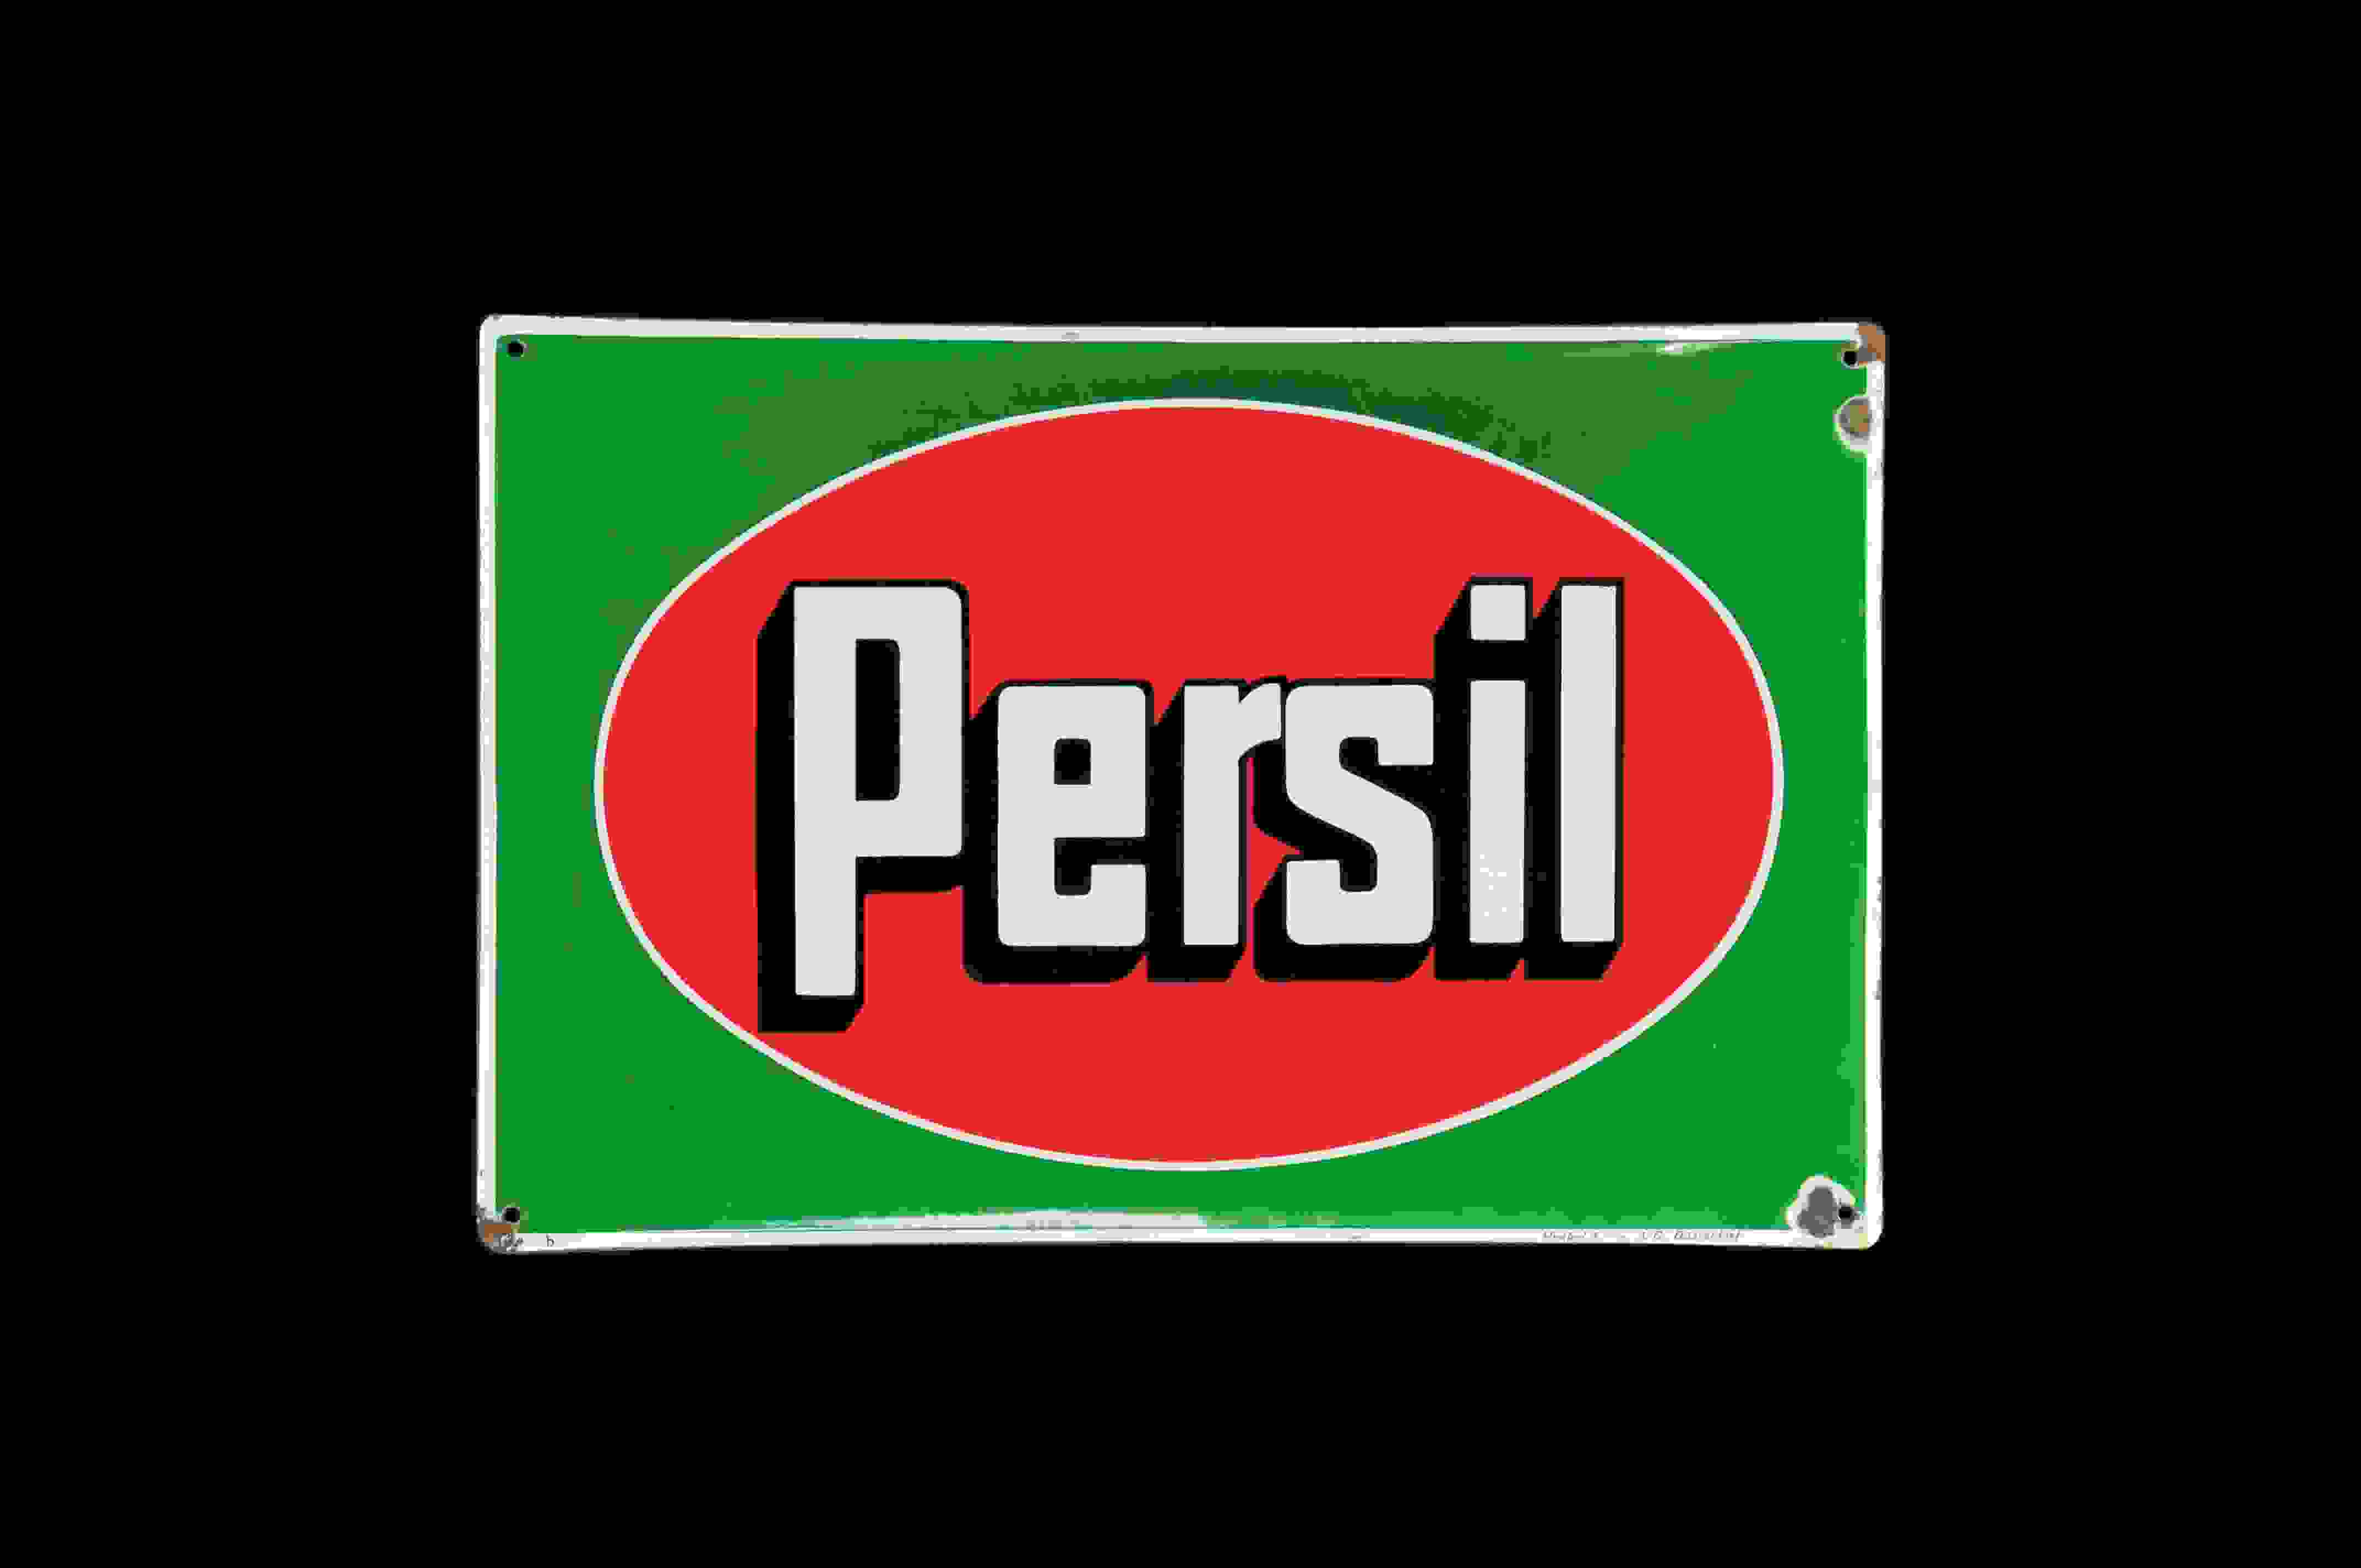 Persil  